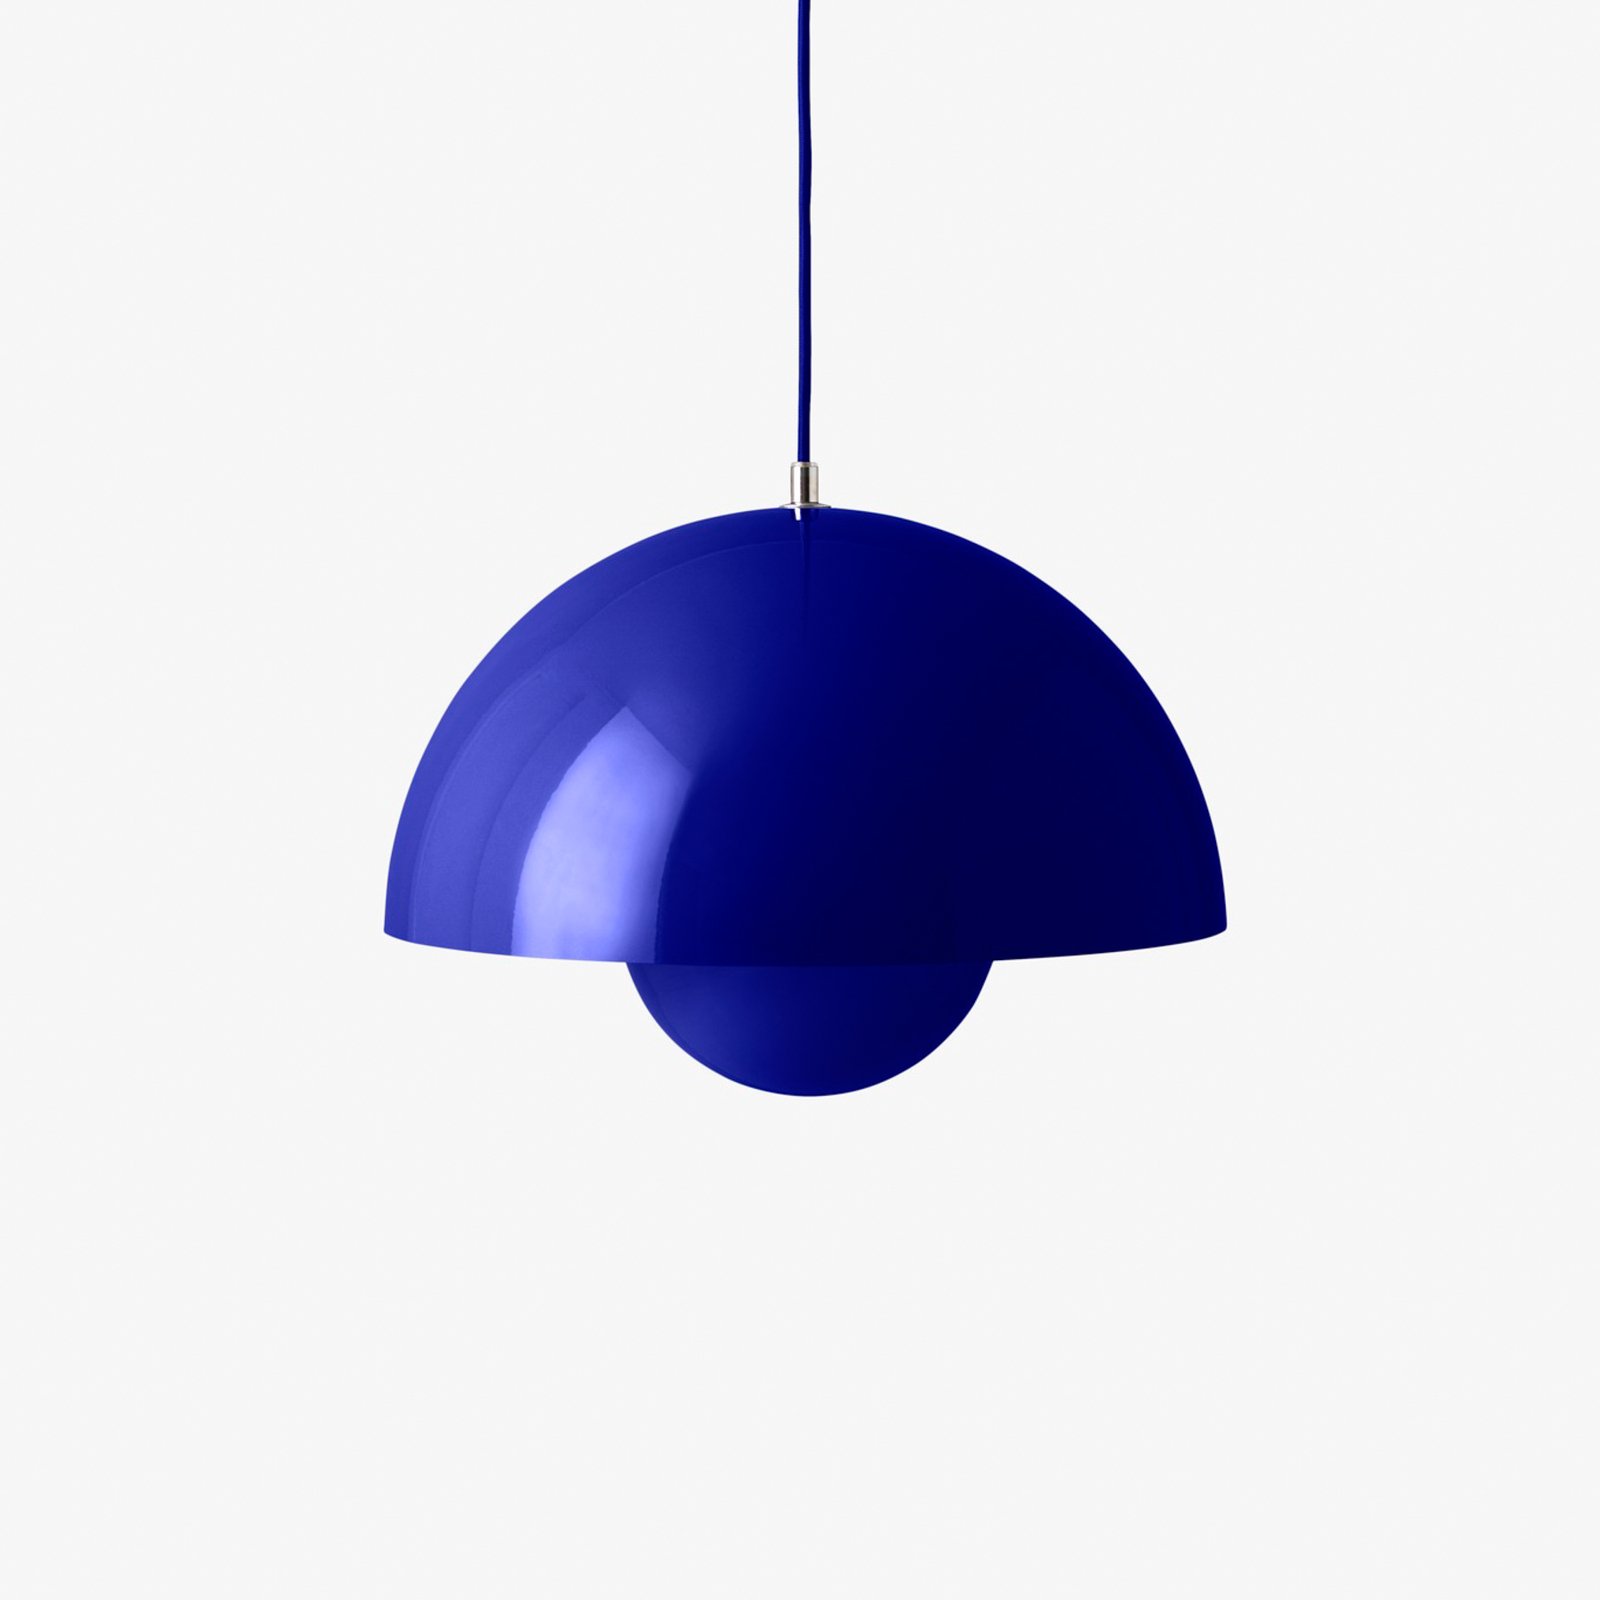 &Tradition viseća svjetiljka Flowerpot VP7, Ø 37 cm, kobaltno plava